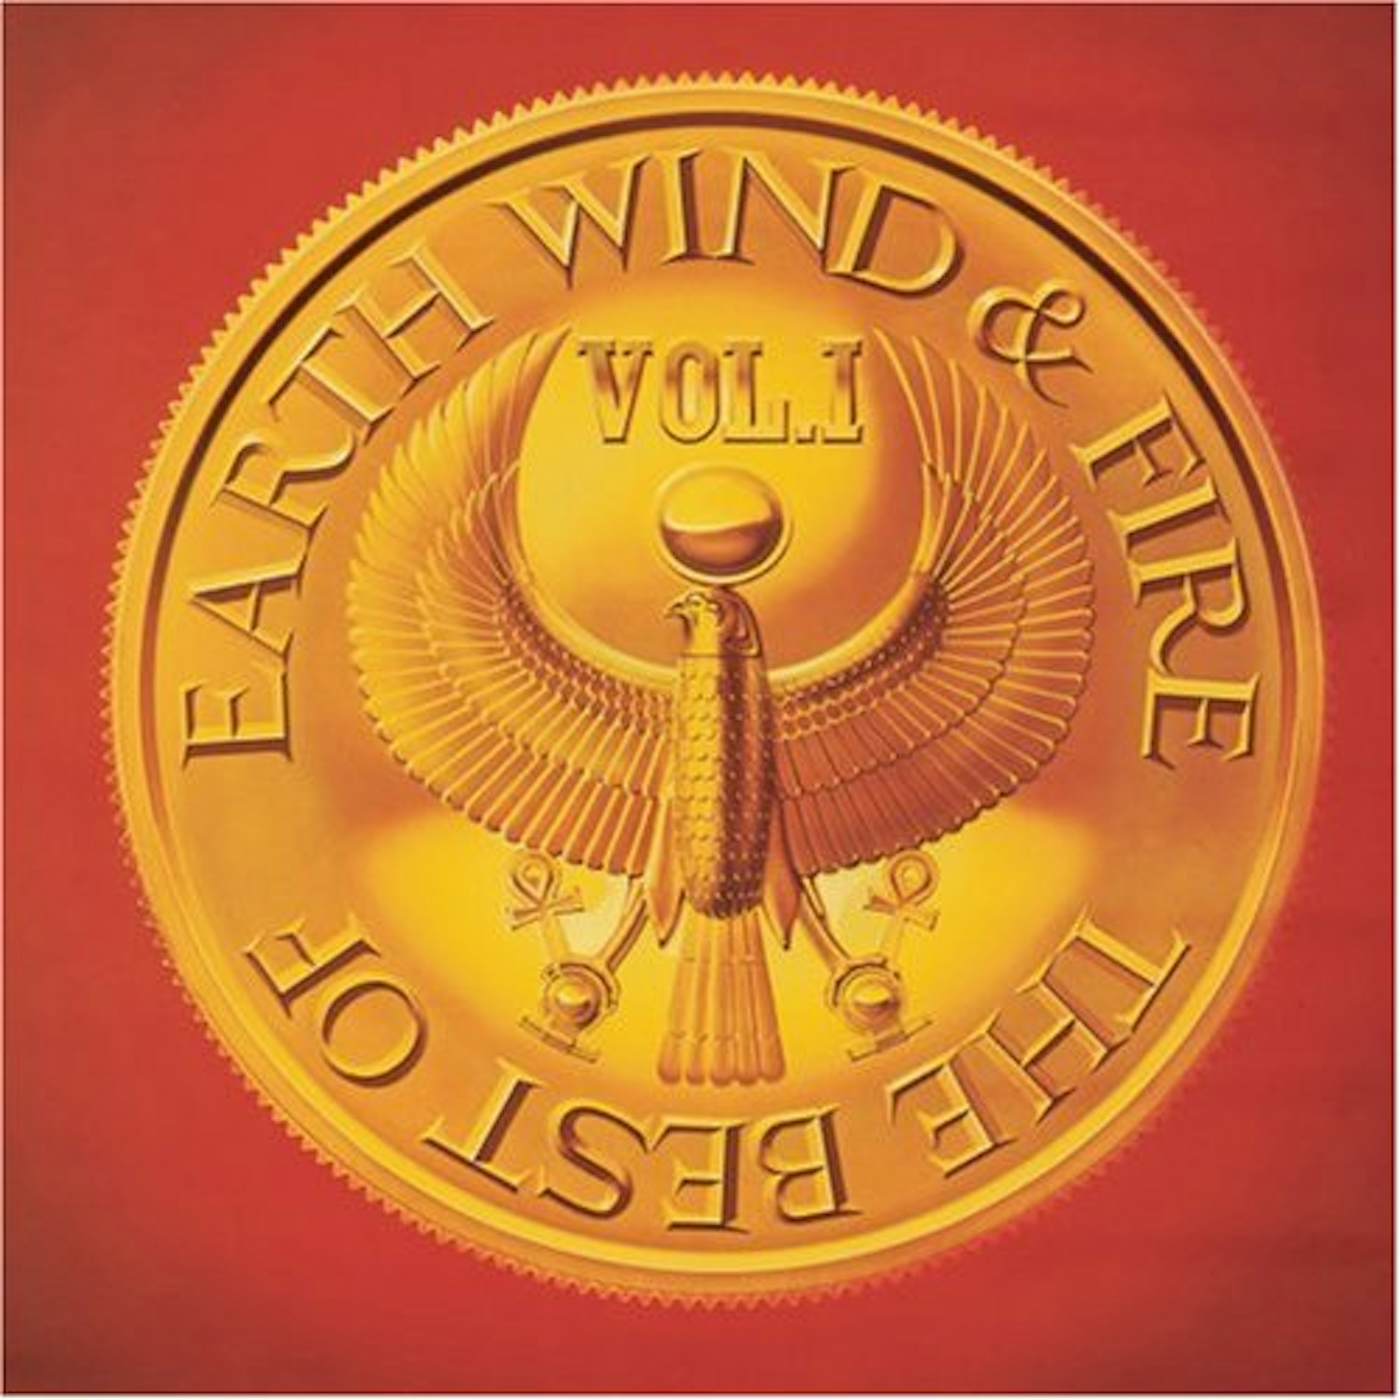 Earth, Wind & Fire BEST OF 1 CD